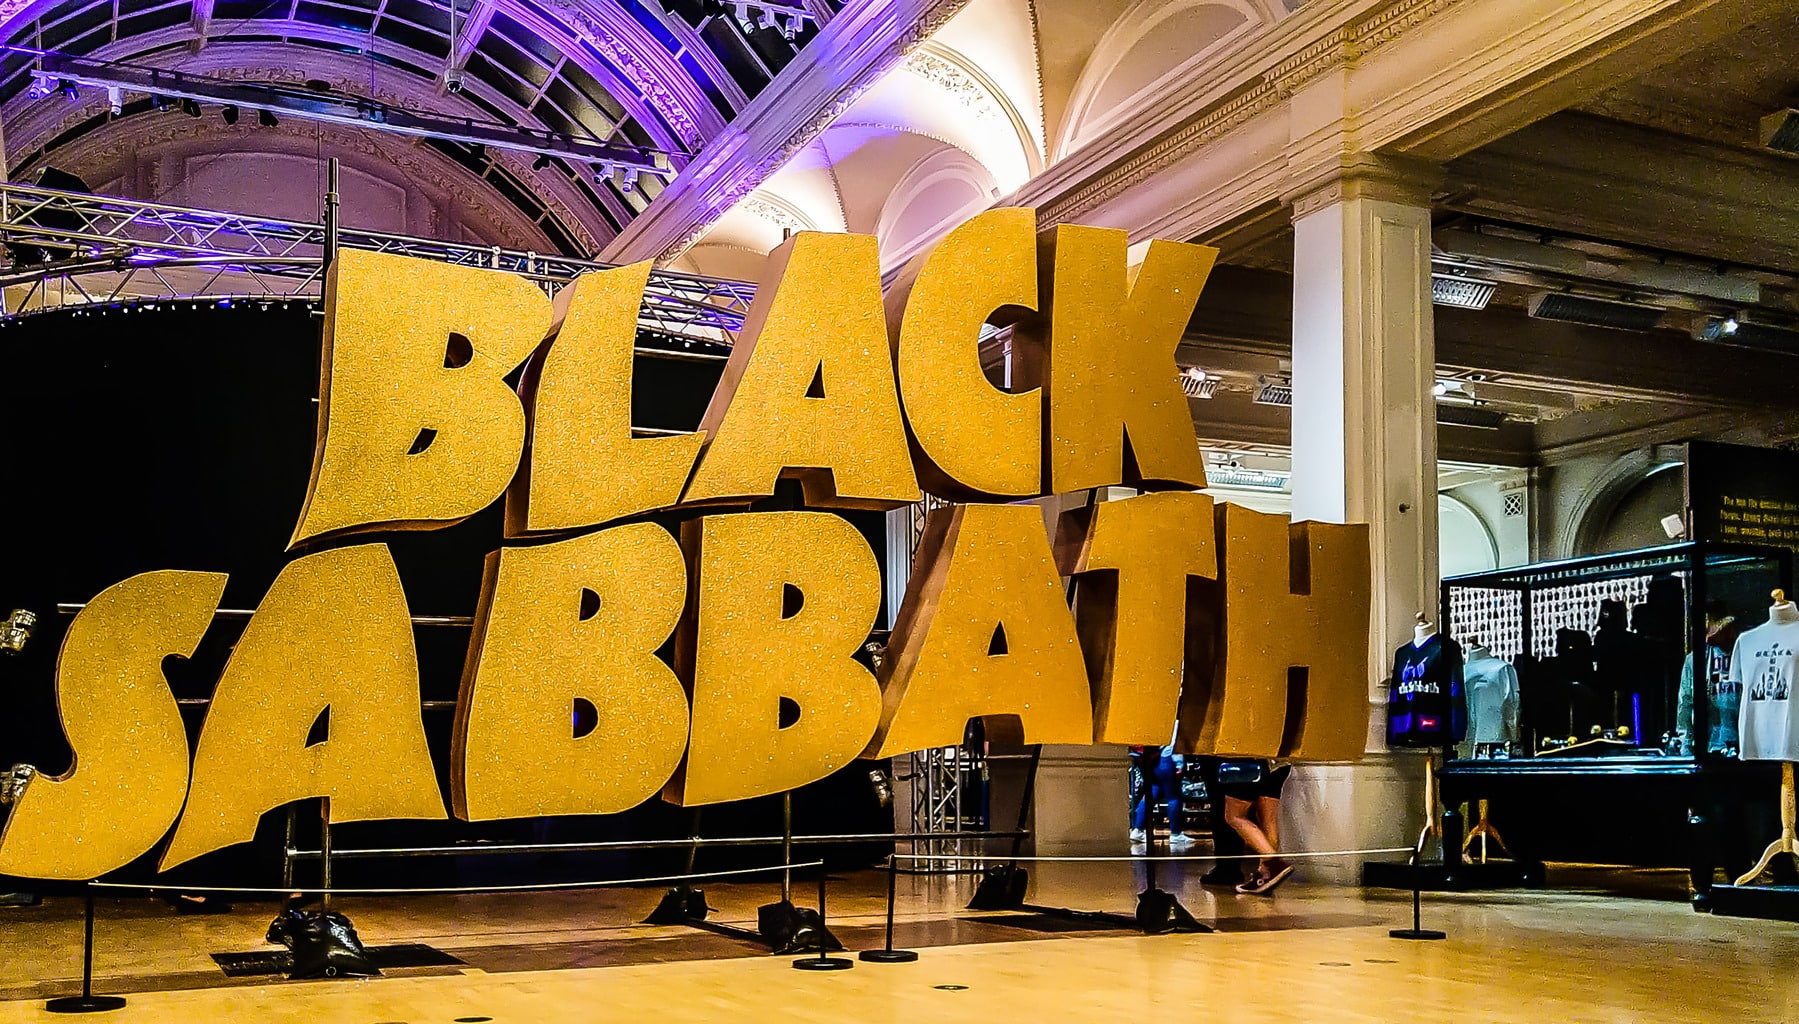 Black Sabbath exhibition in Birmingham